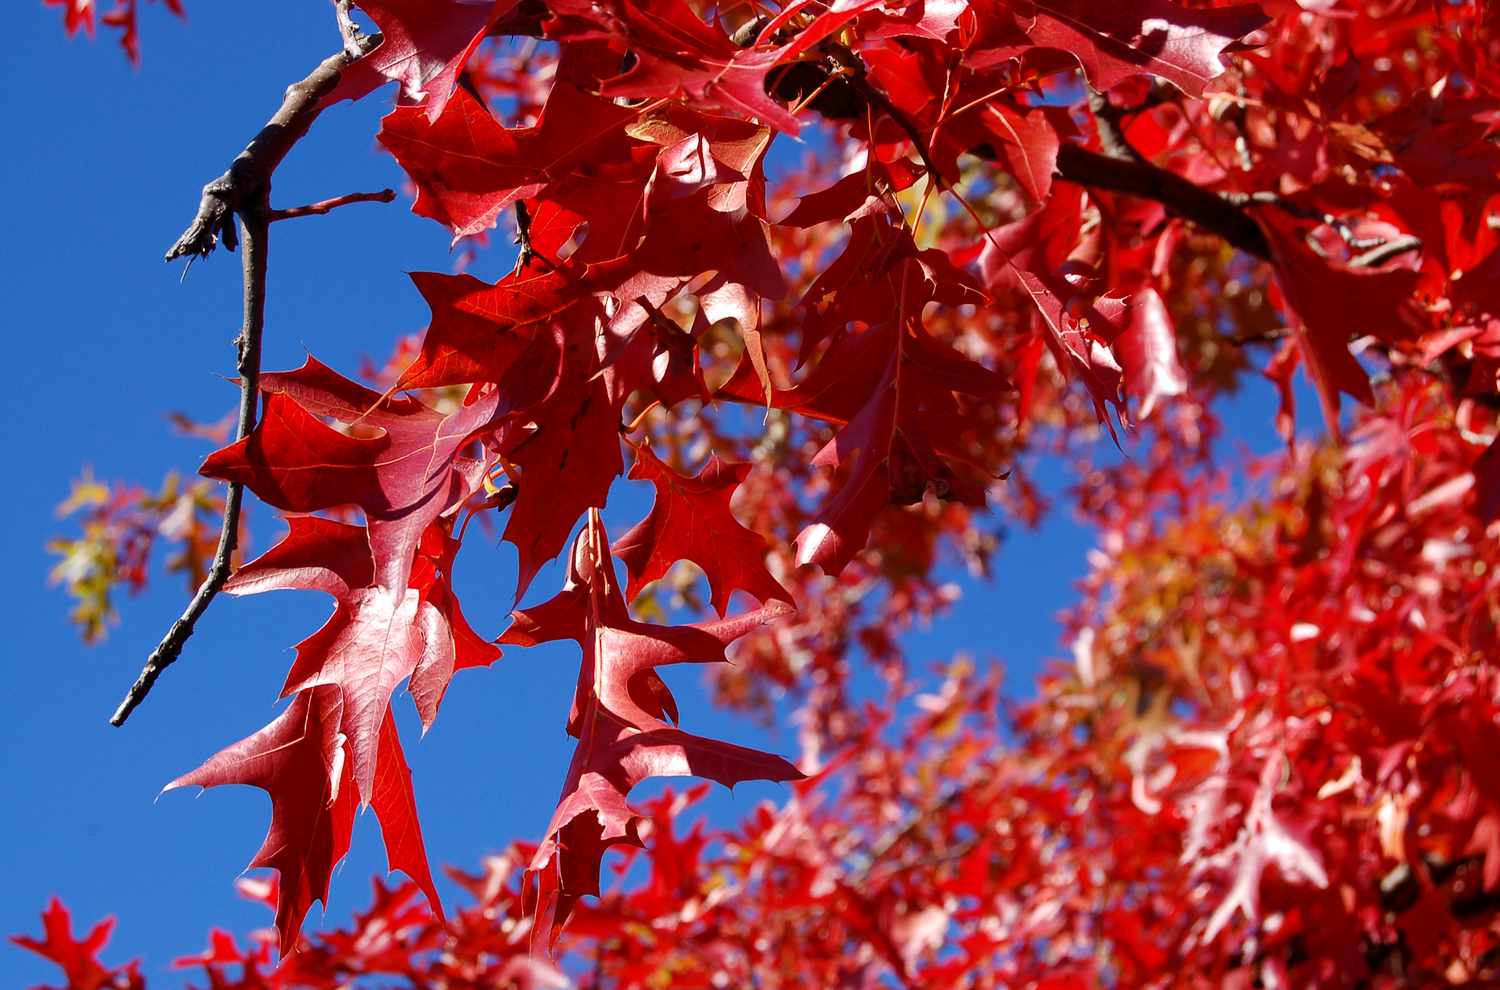 Herbstlaub von Pin oak.